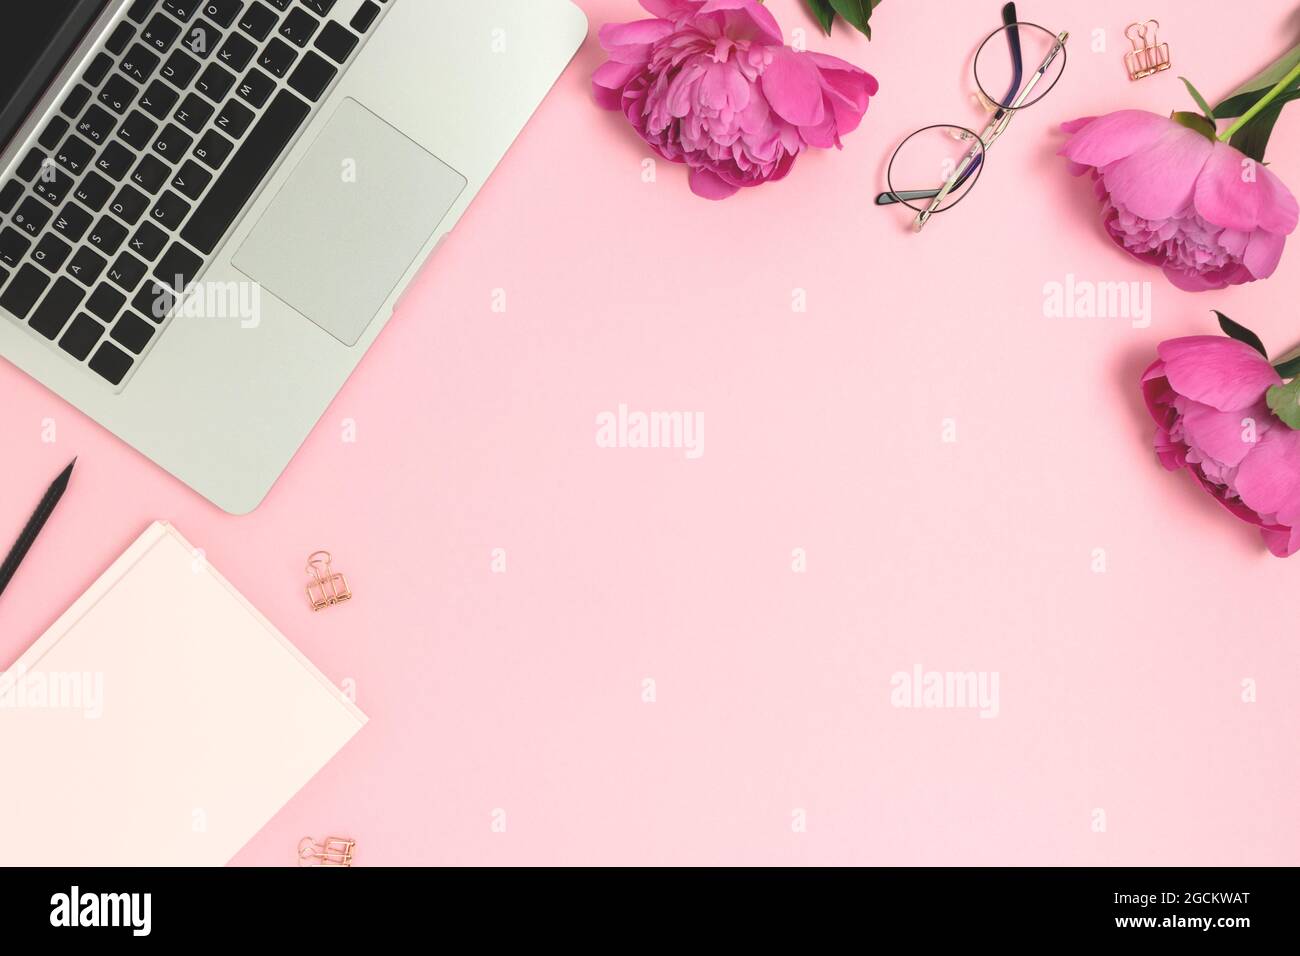 Bộ sưu tập 888 Background laptop cute đẹp nhất hiện nay